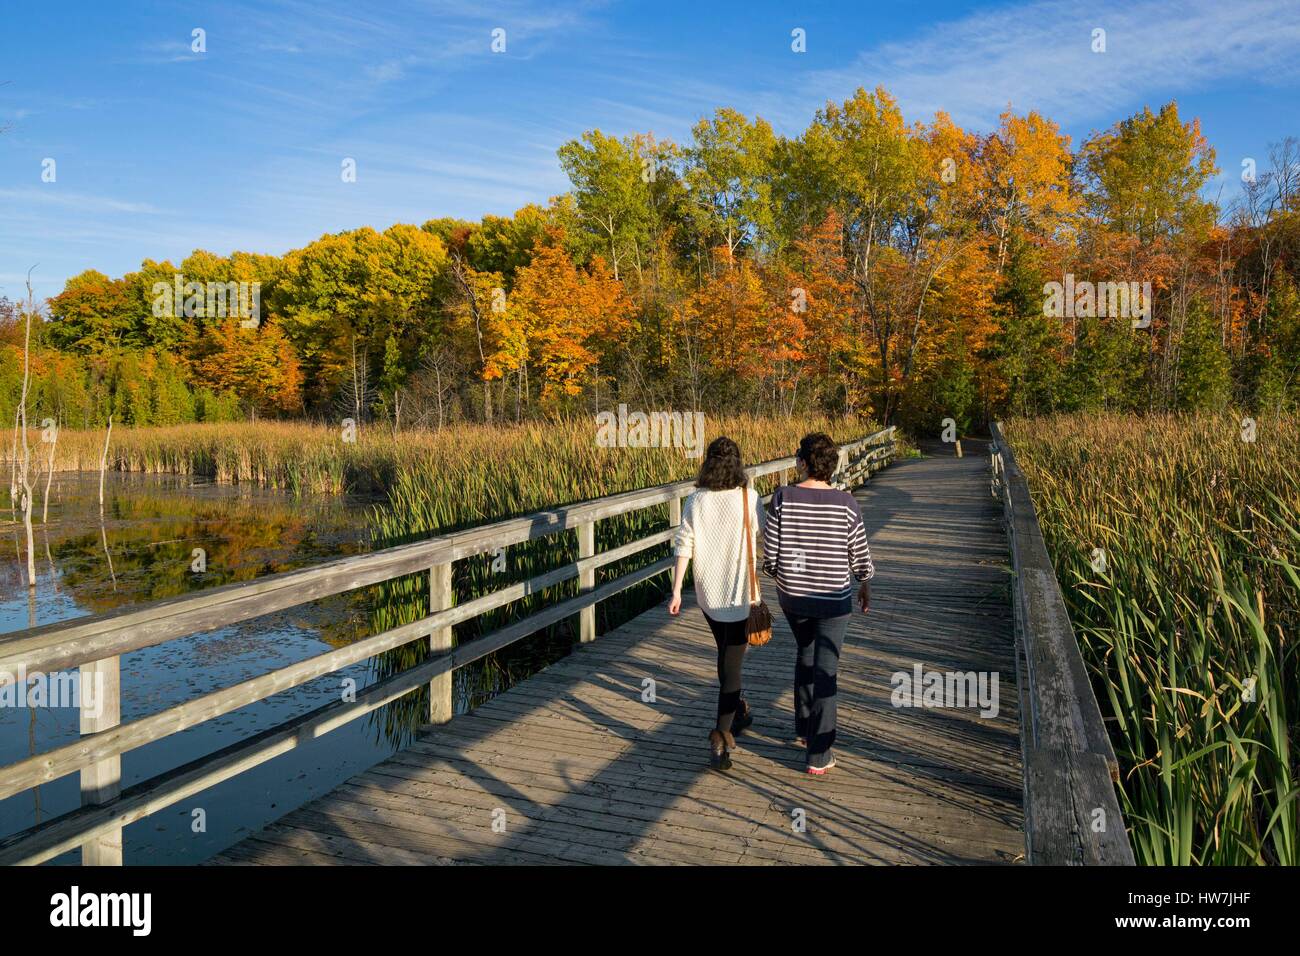 Canada, Québec, Montréal, l'Île Bizard, le parc naturel de bois de l'Ile Bizard dans les couleurs de l'automne, les randonneurs sur une passerelle en bois Banque D'Images